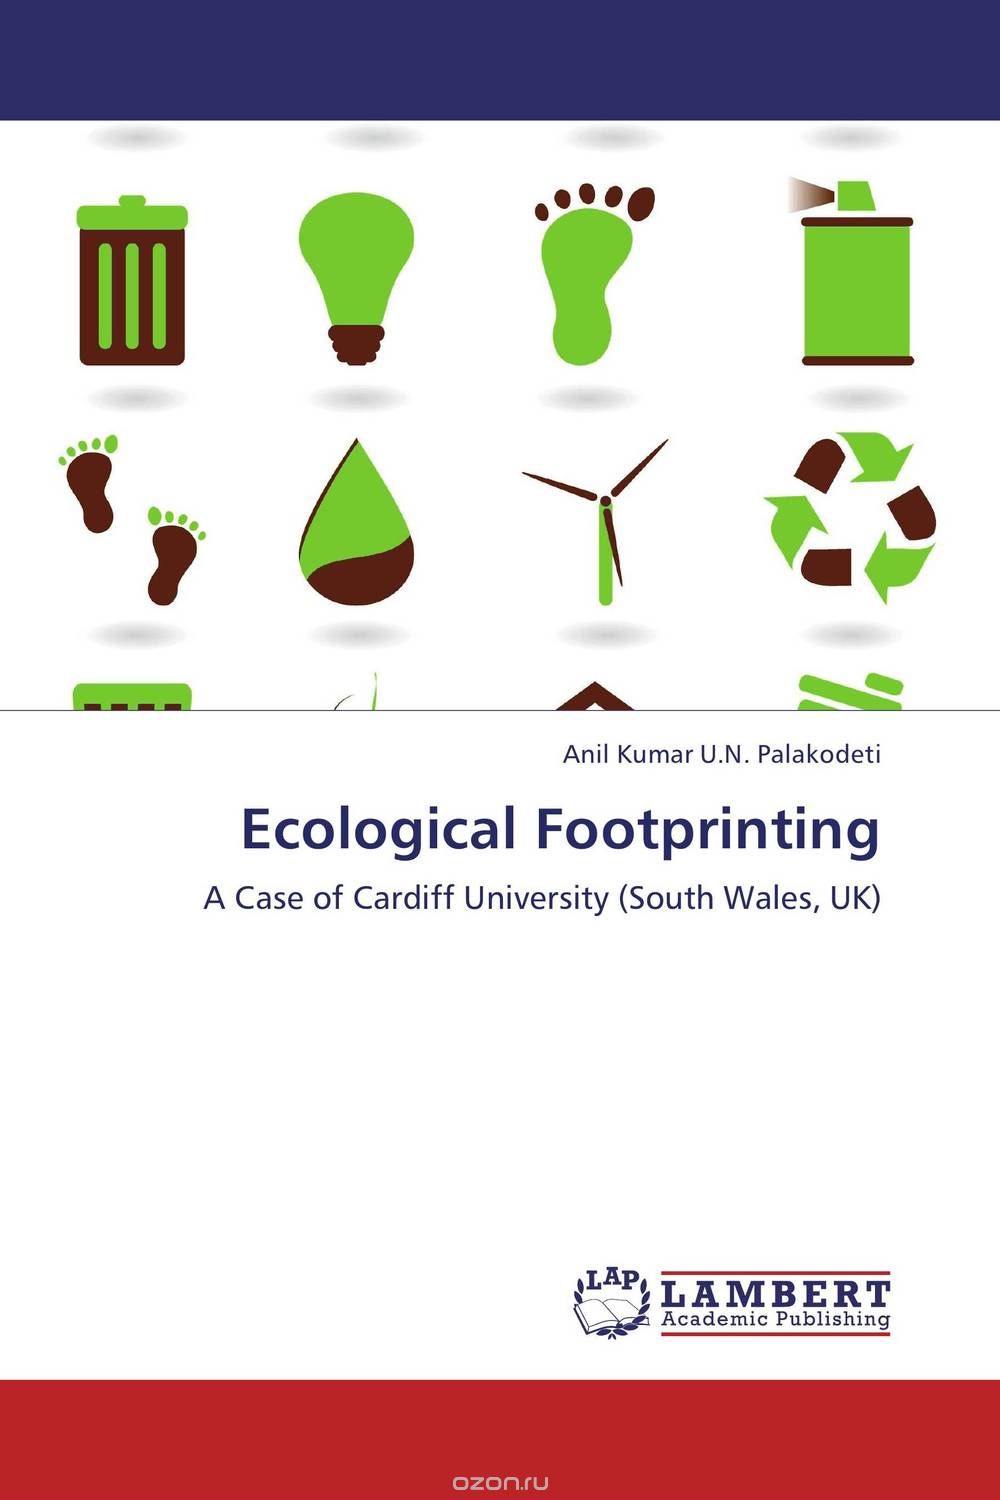 Скачать книгу "Ecological Footprinting"